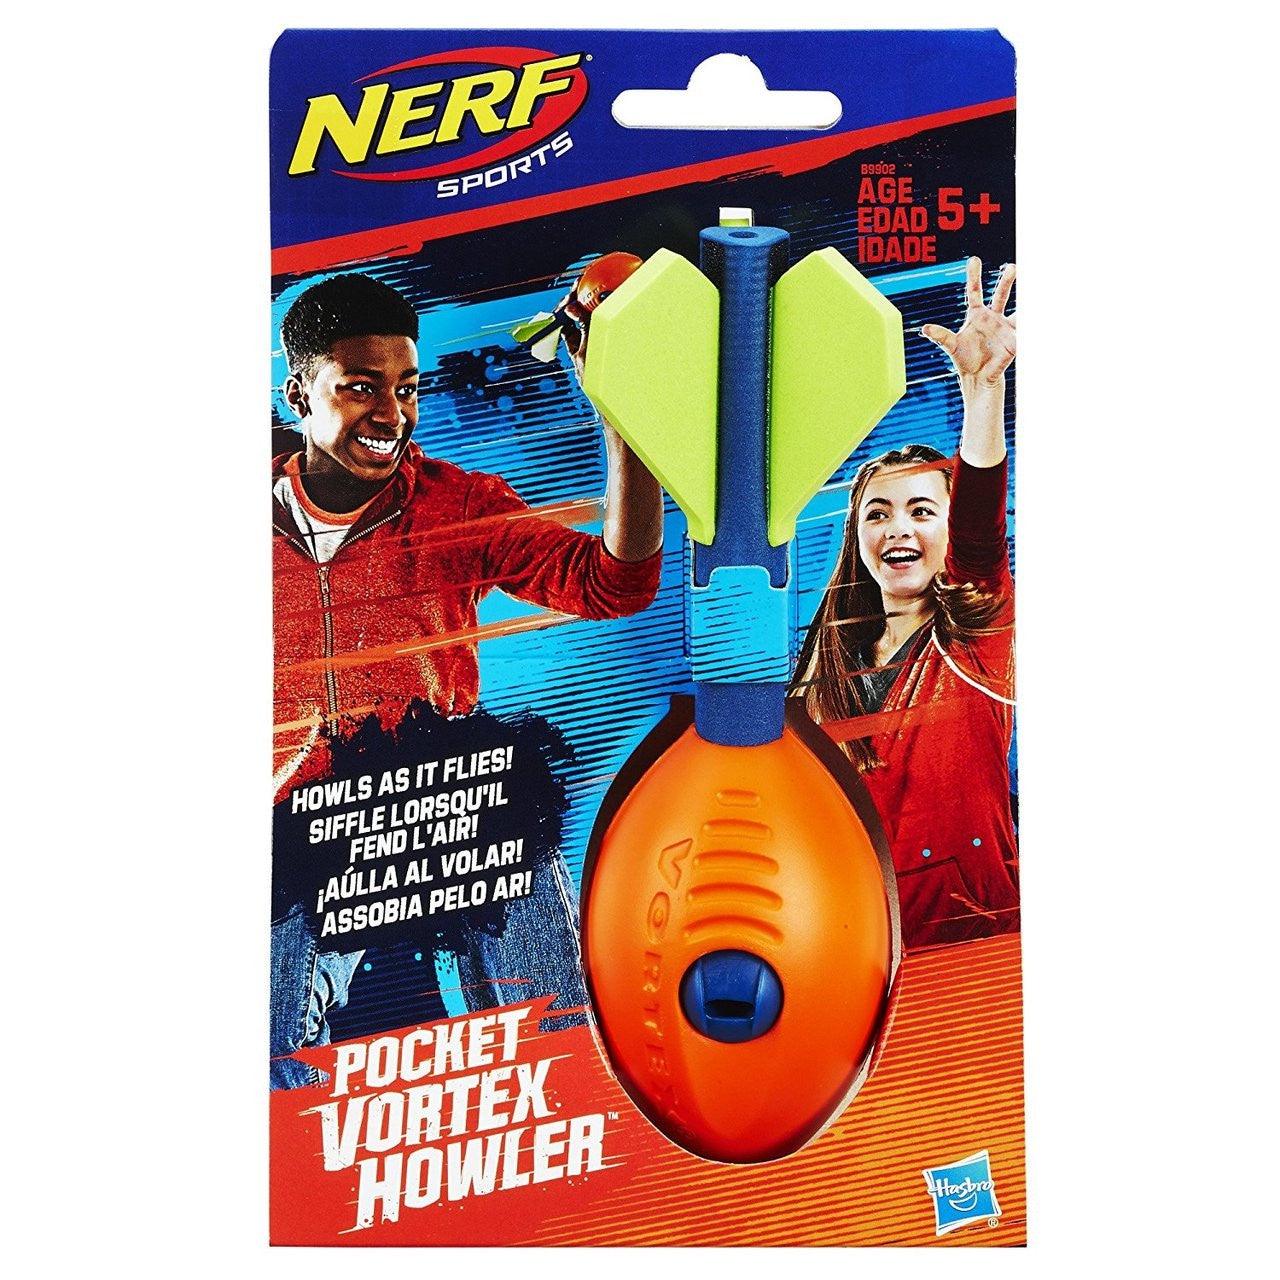 Hasbro Nerf Sports Pocket Vortex Howler